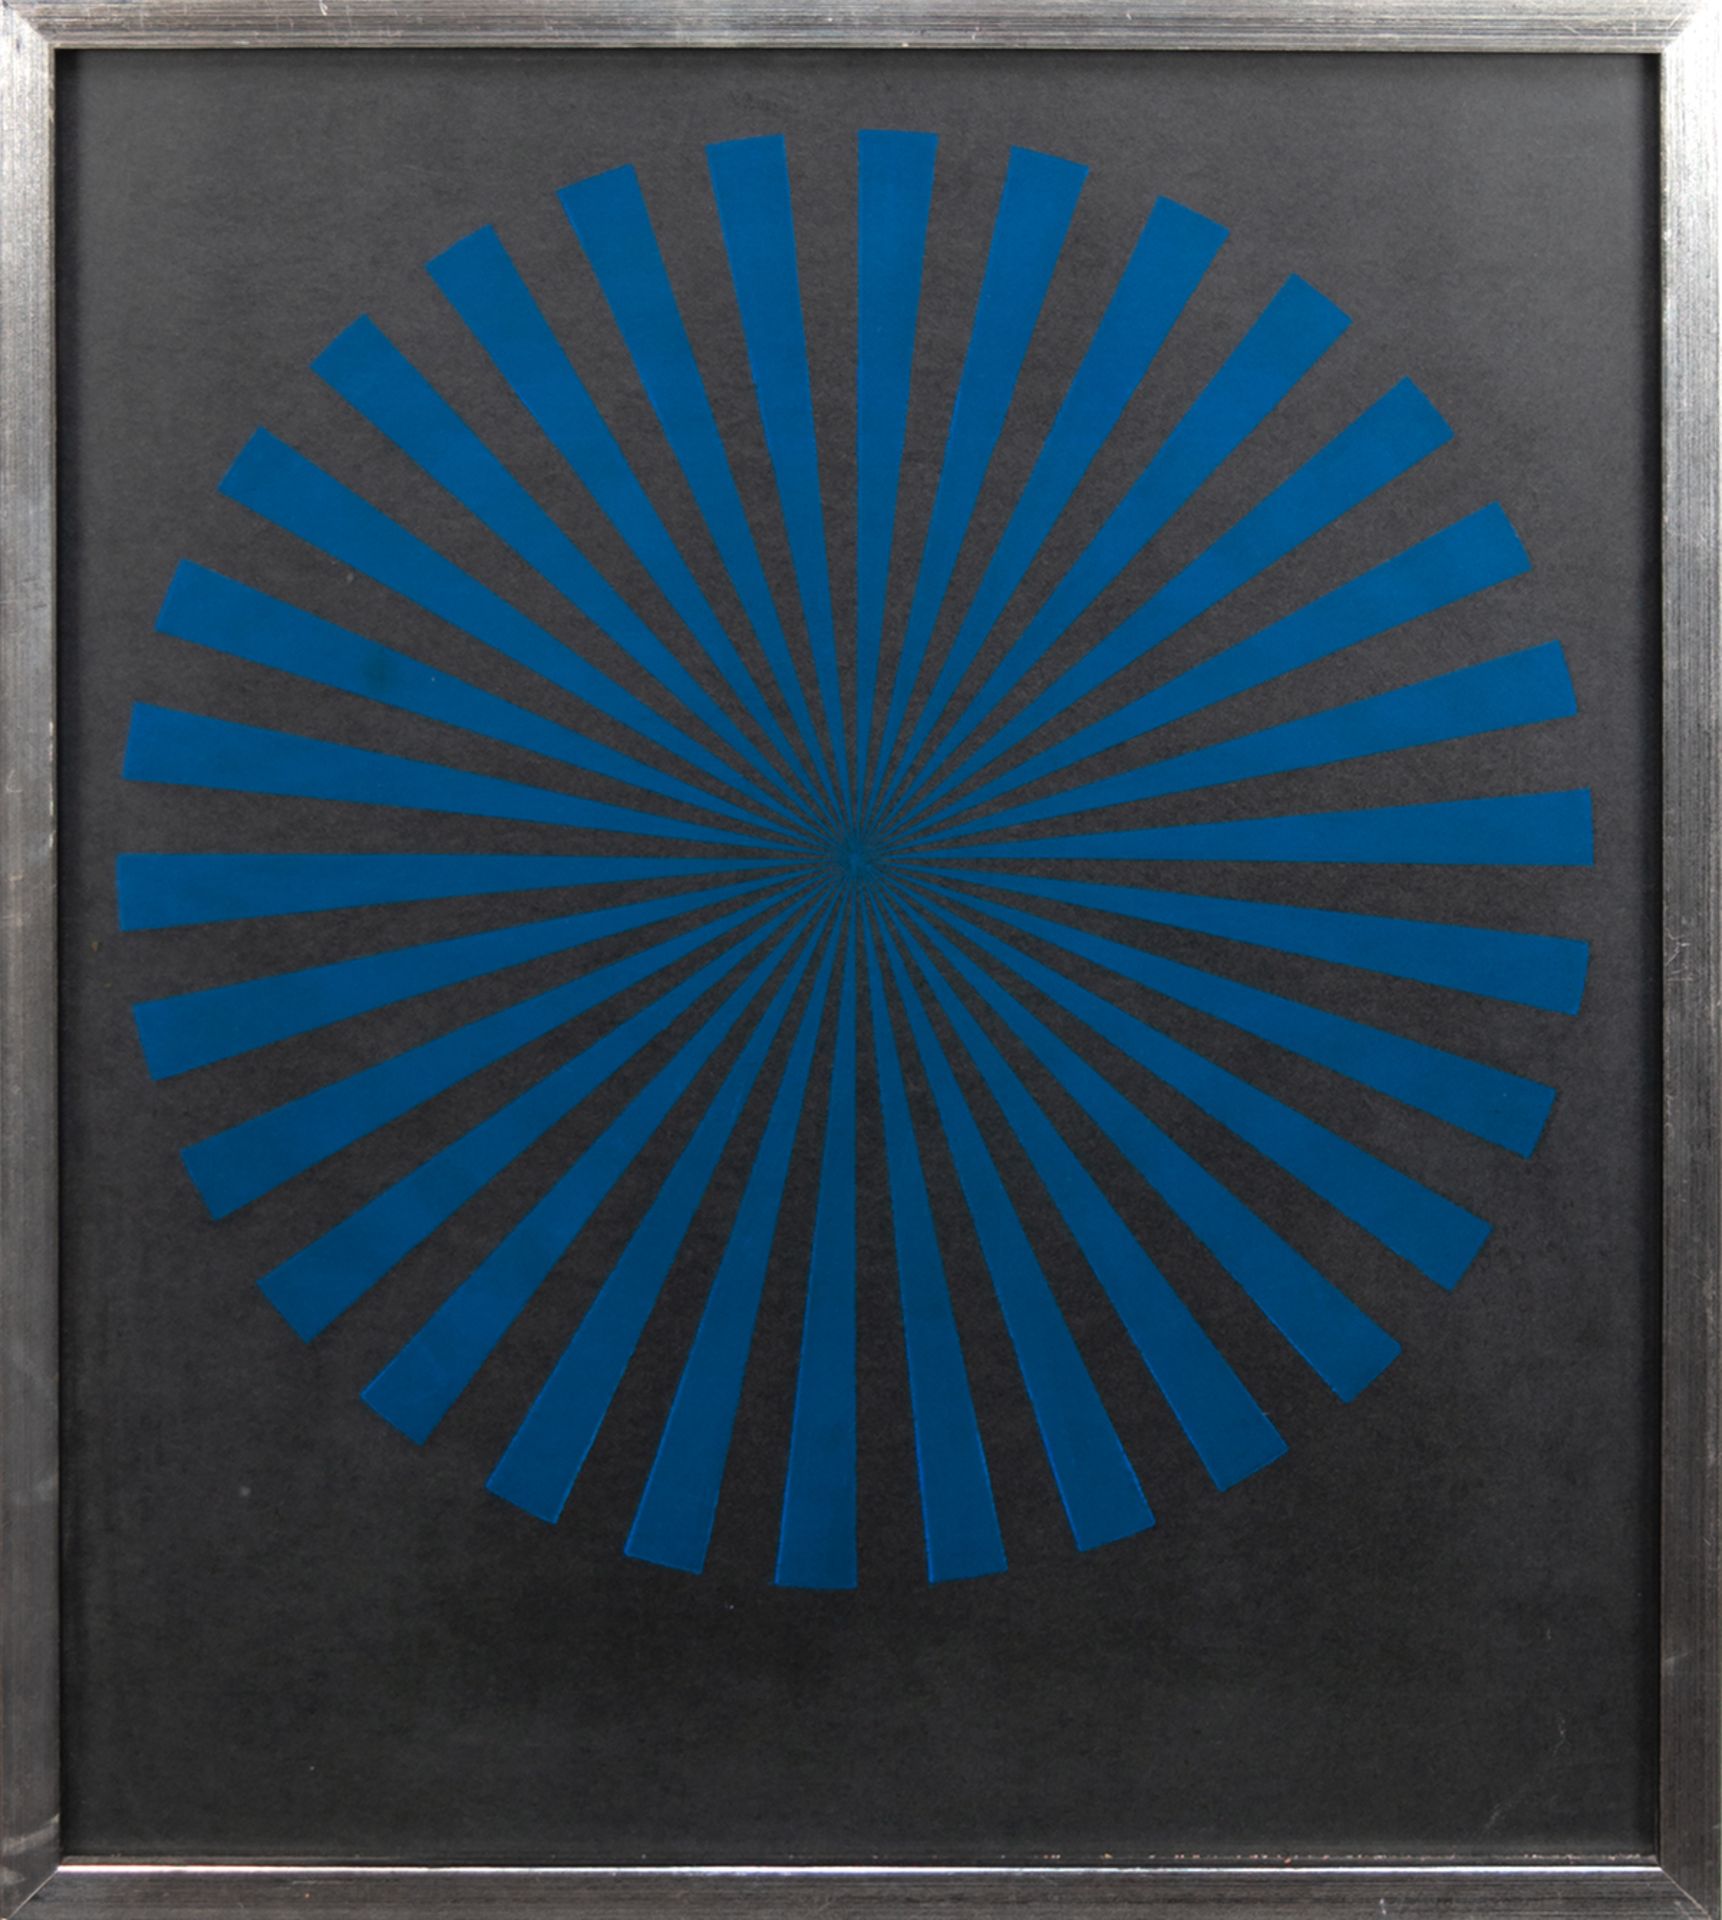 Matthaei, J. Michael "Abstrakt in Blau", Einzeldruck 1970, sign., 64x56 cm, hinter Glas und Rahmen